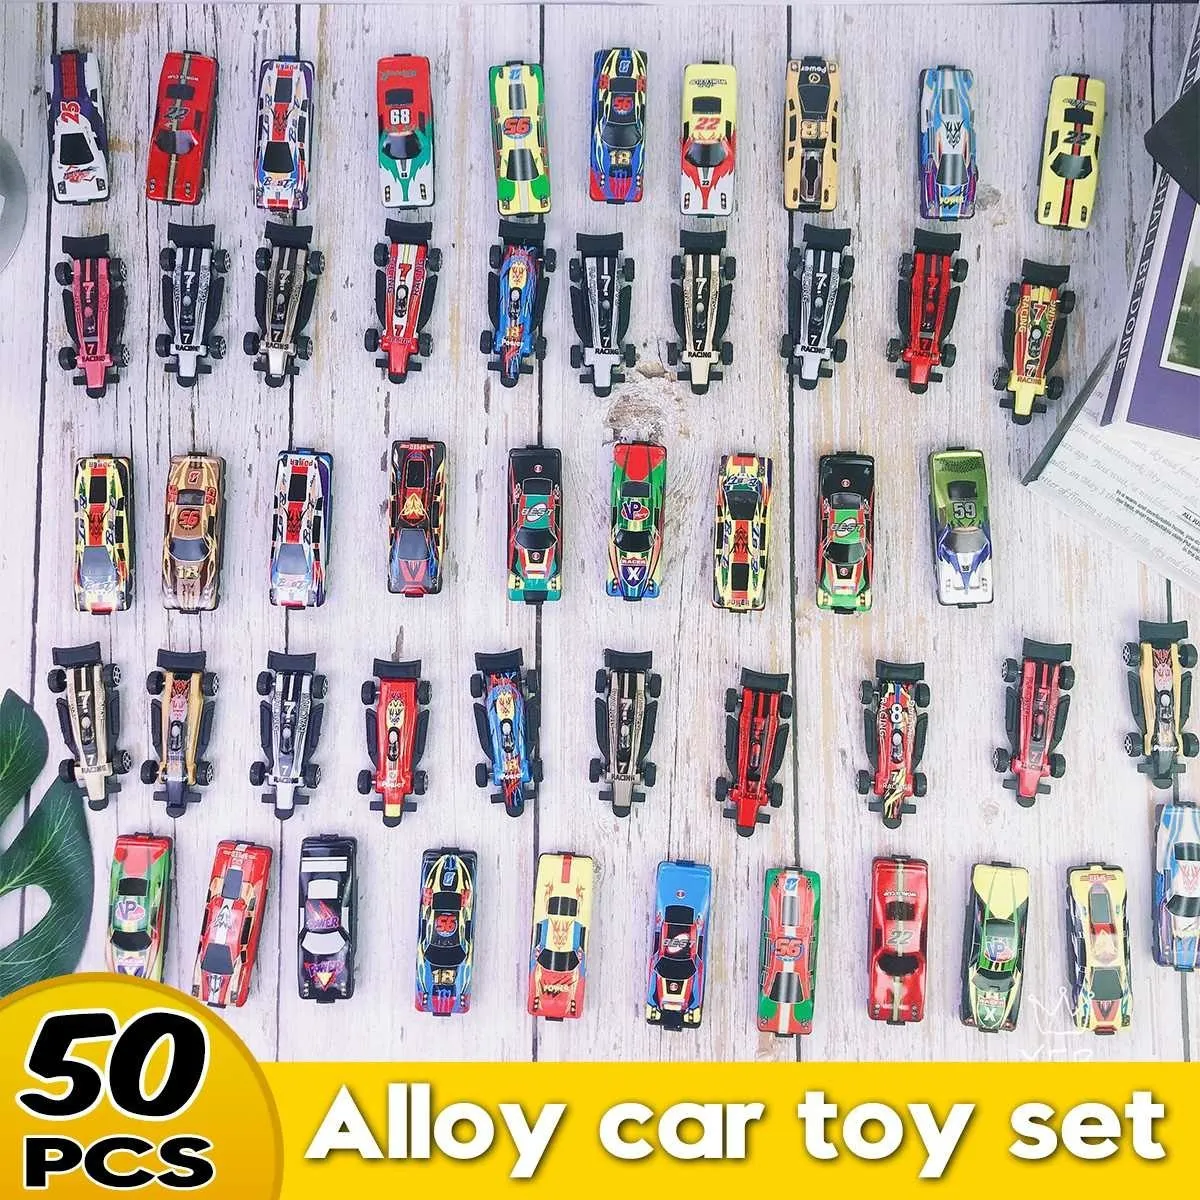 gamin mini set toy set wart garage jouet 1:50 hot diecast alliage métal race voiture mannequin garçon garçon de Noël cadeau lj2009302119203